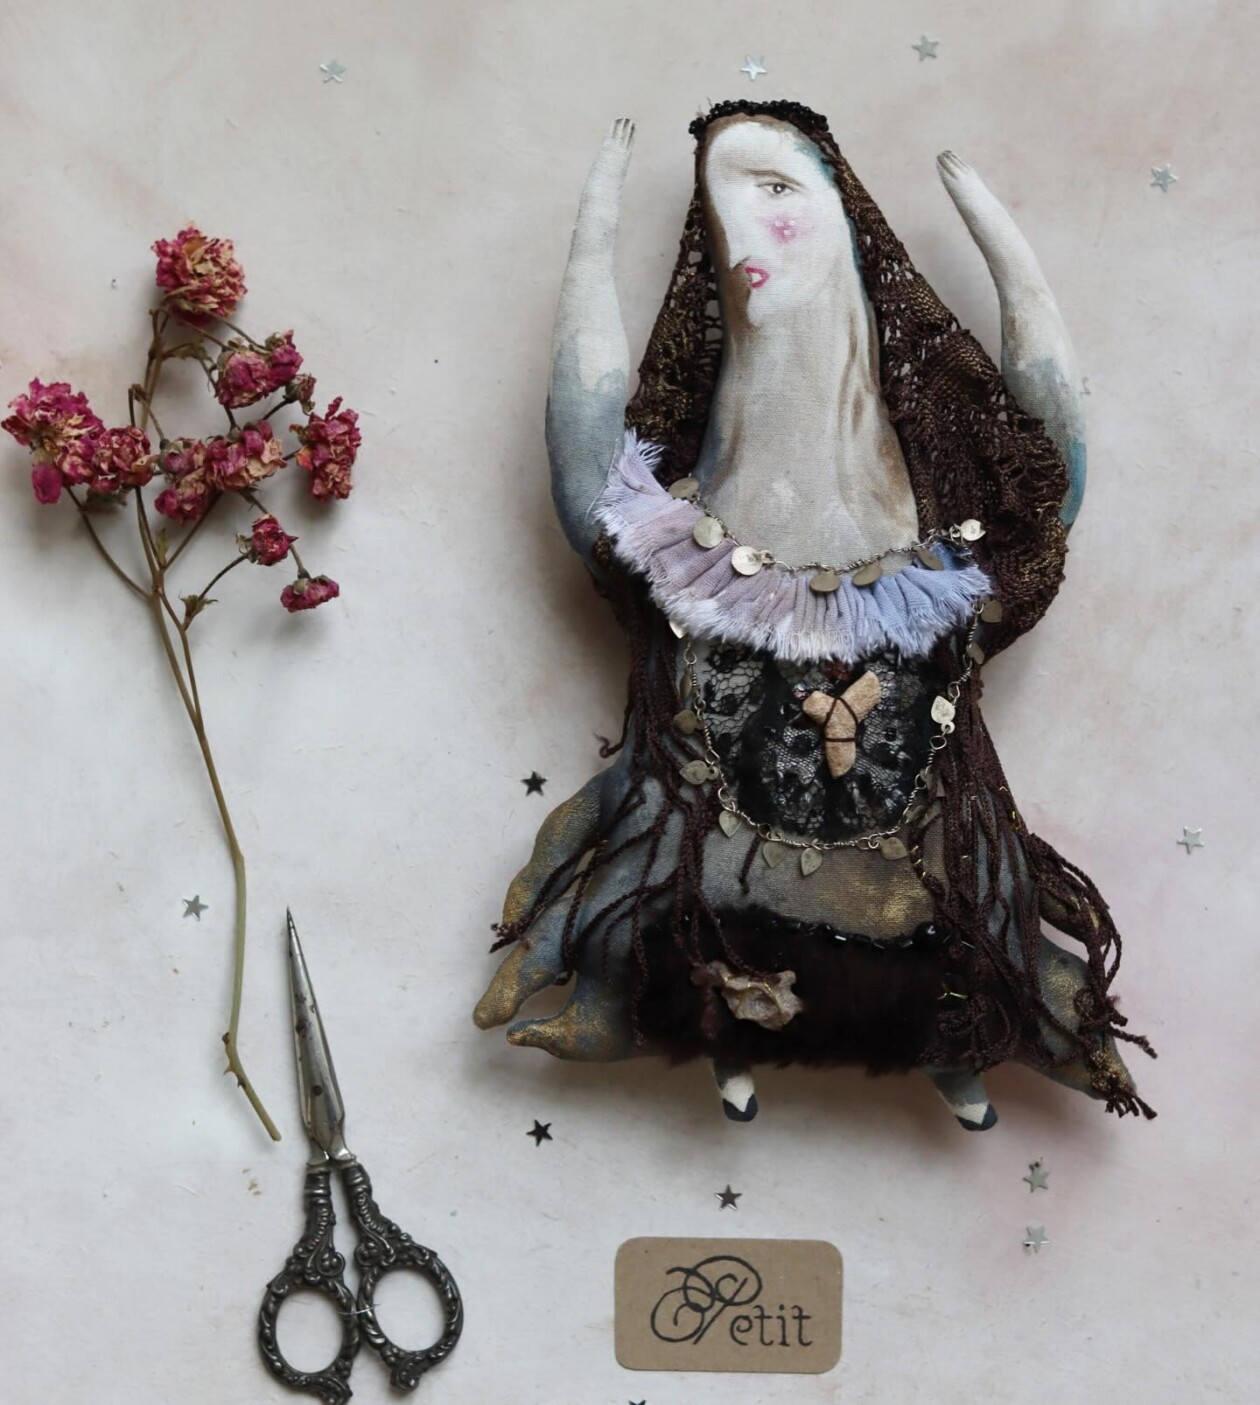 Magical Textile Dolls By Anouk De Groot (6)